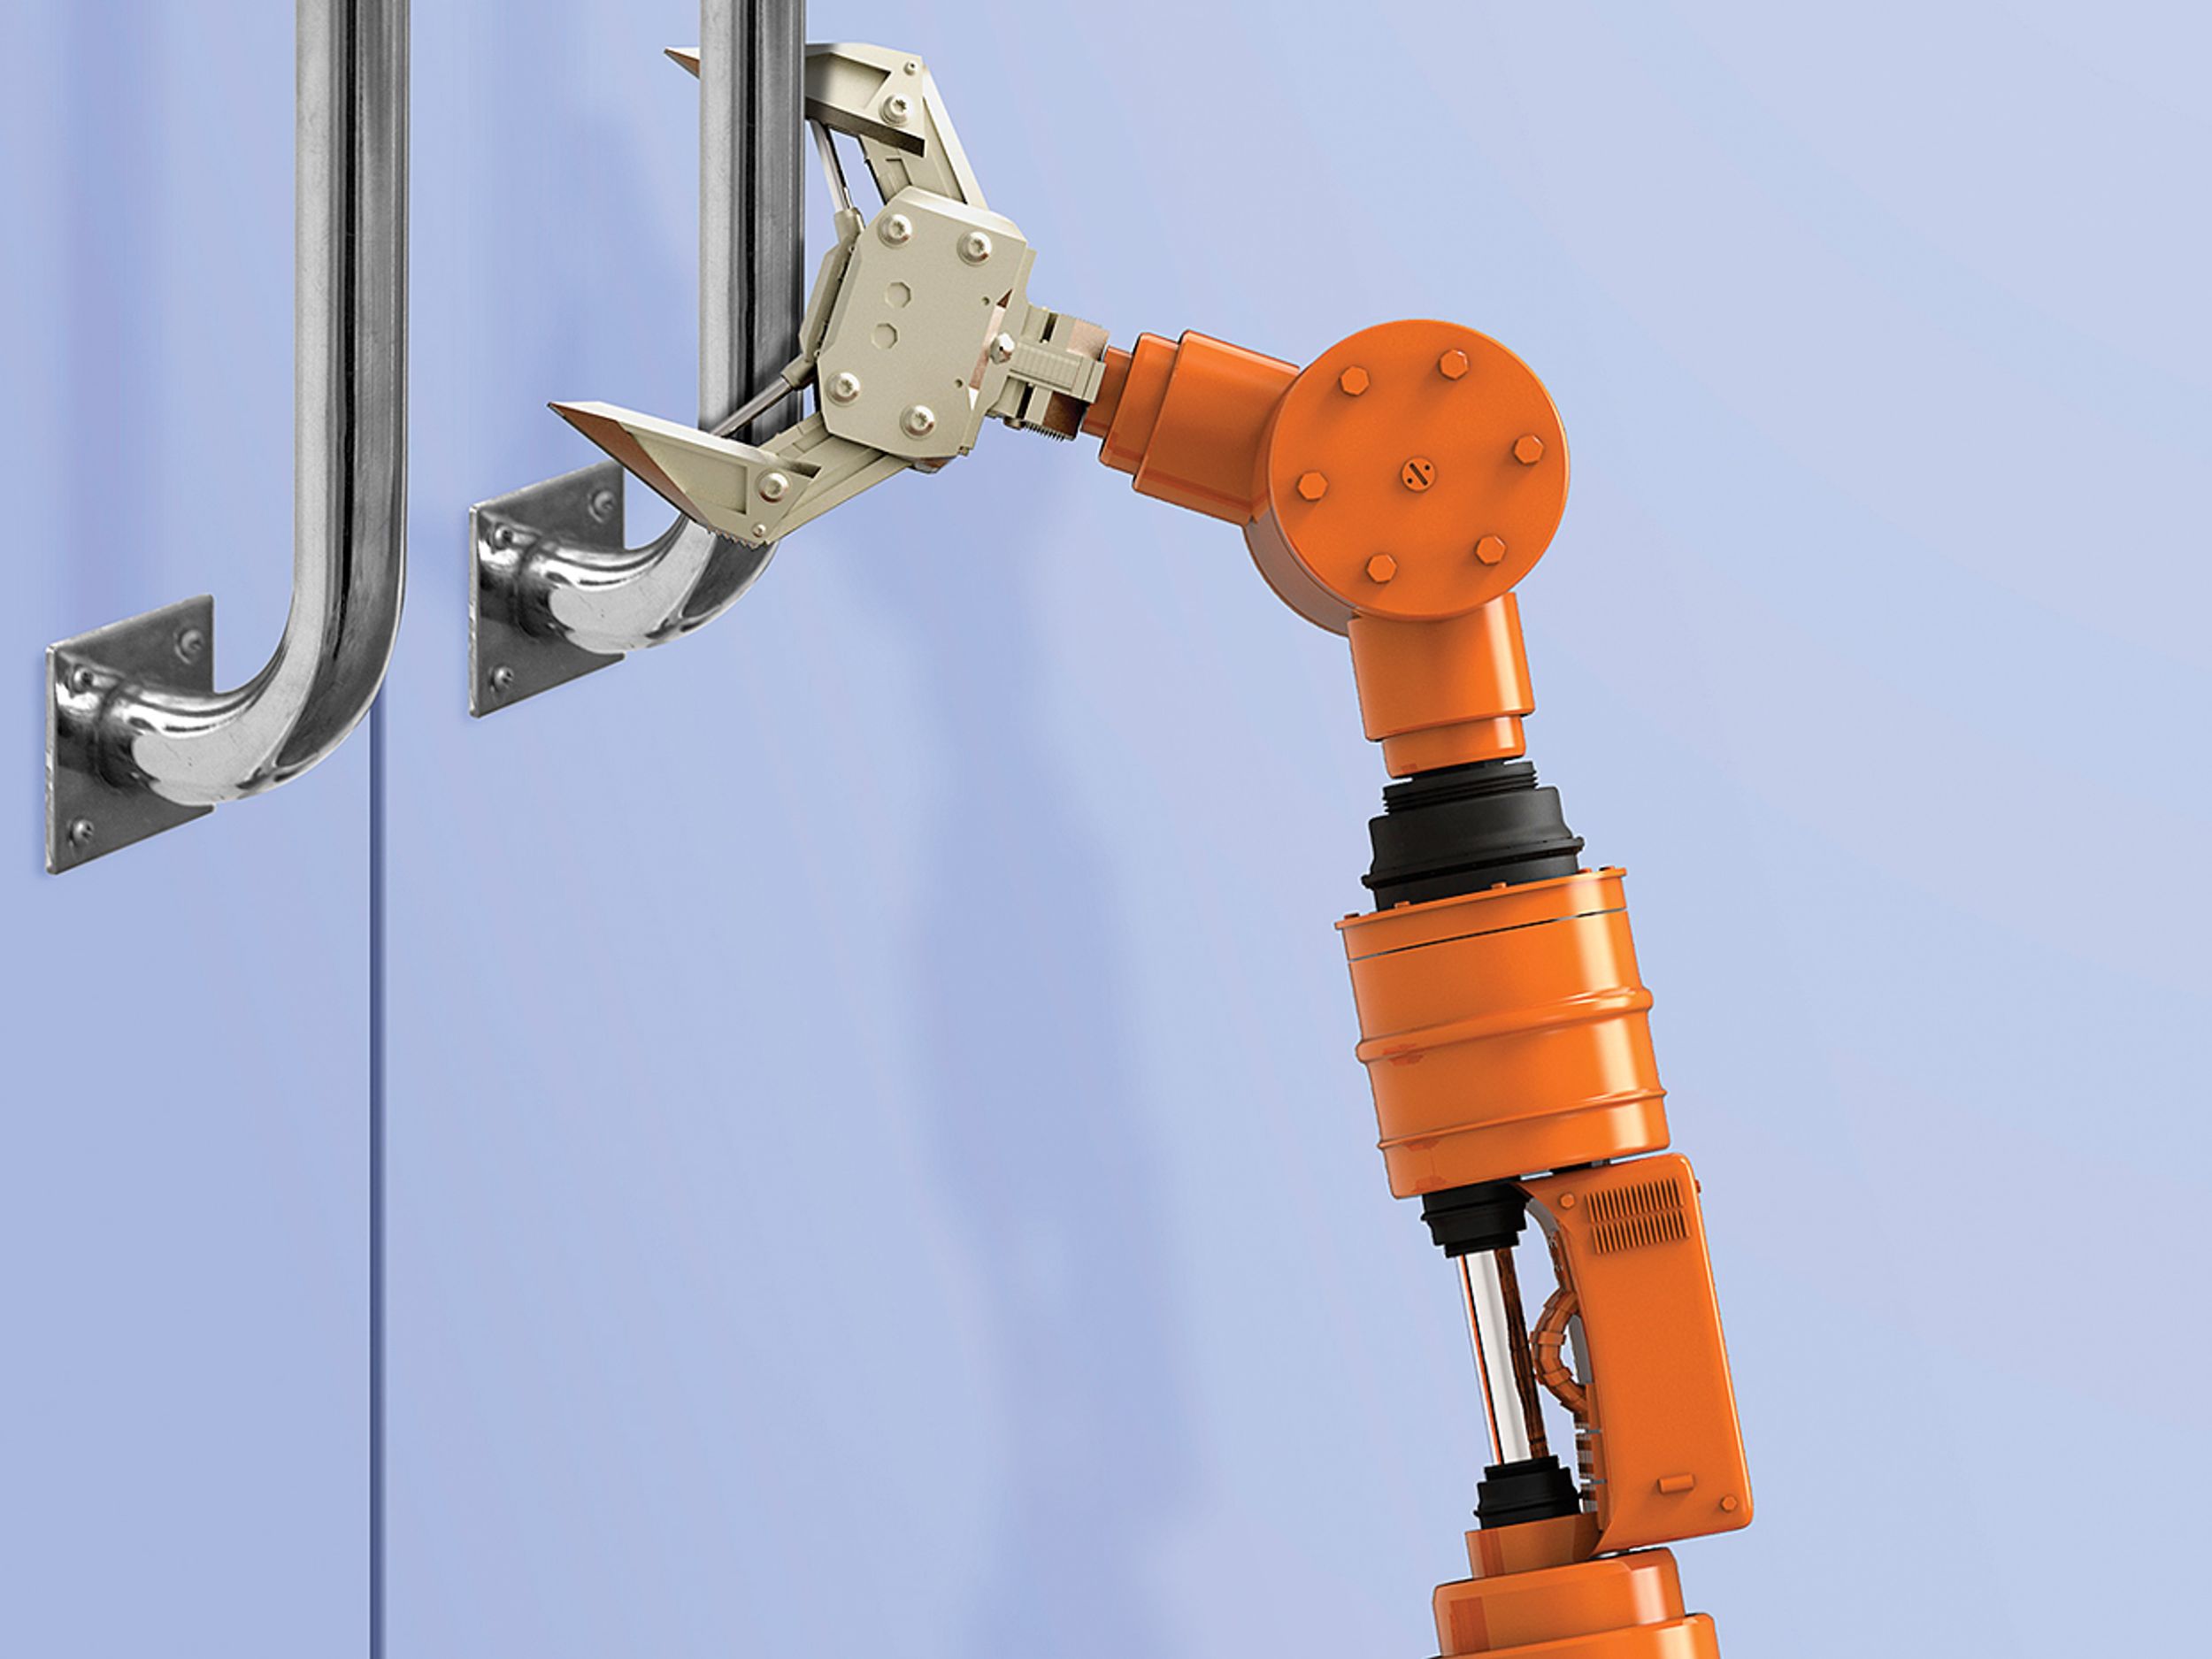 Photo of robot arm grabbing door handle.